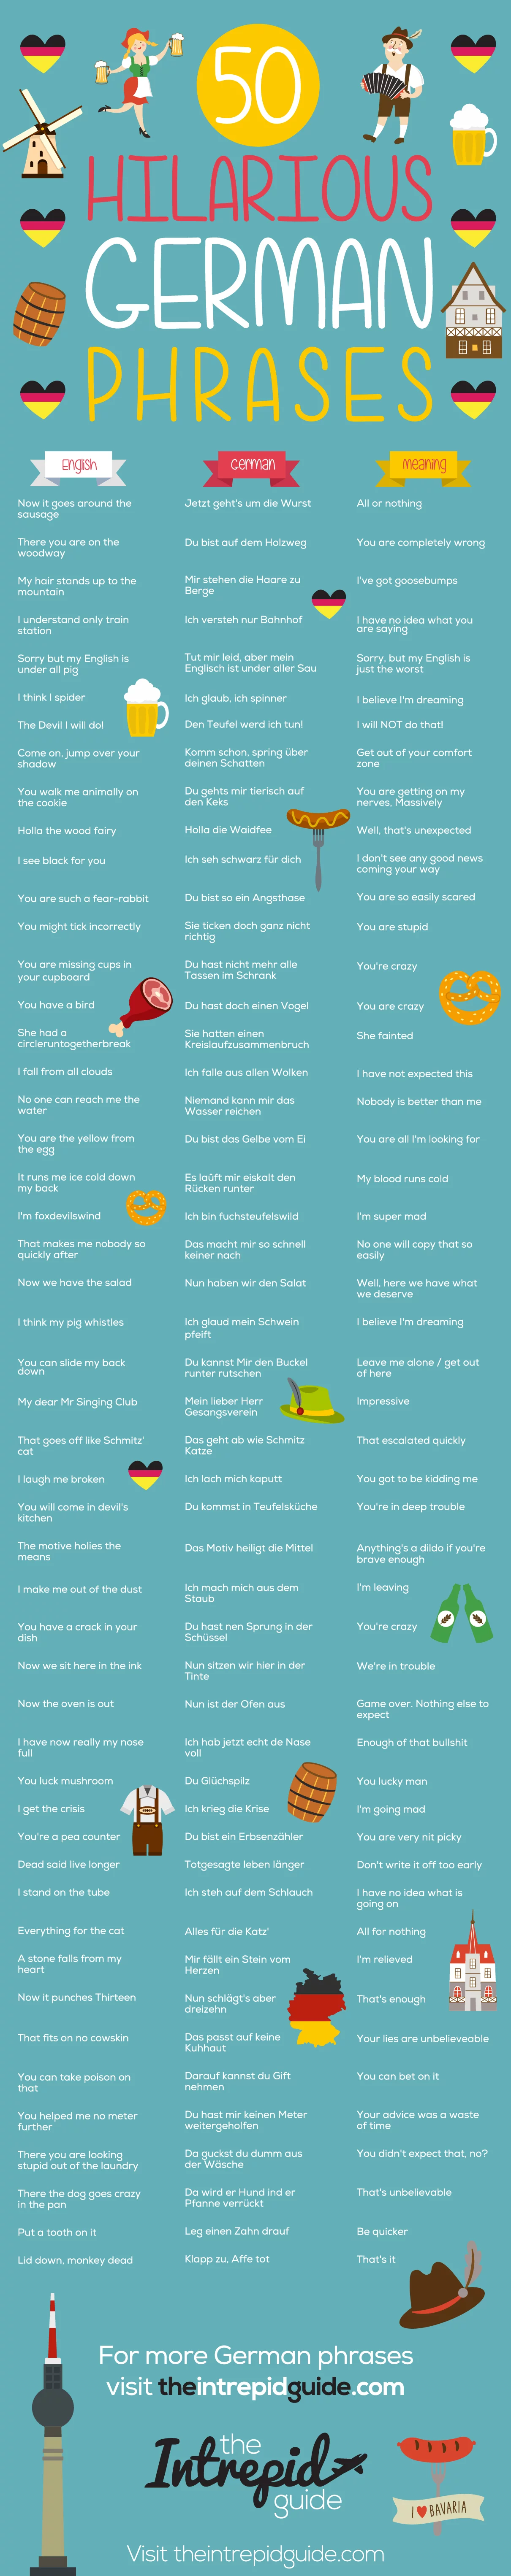 German Phrases infographic